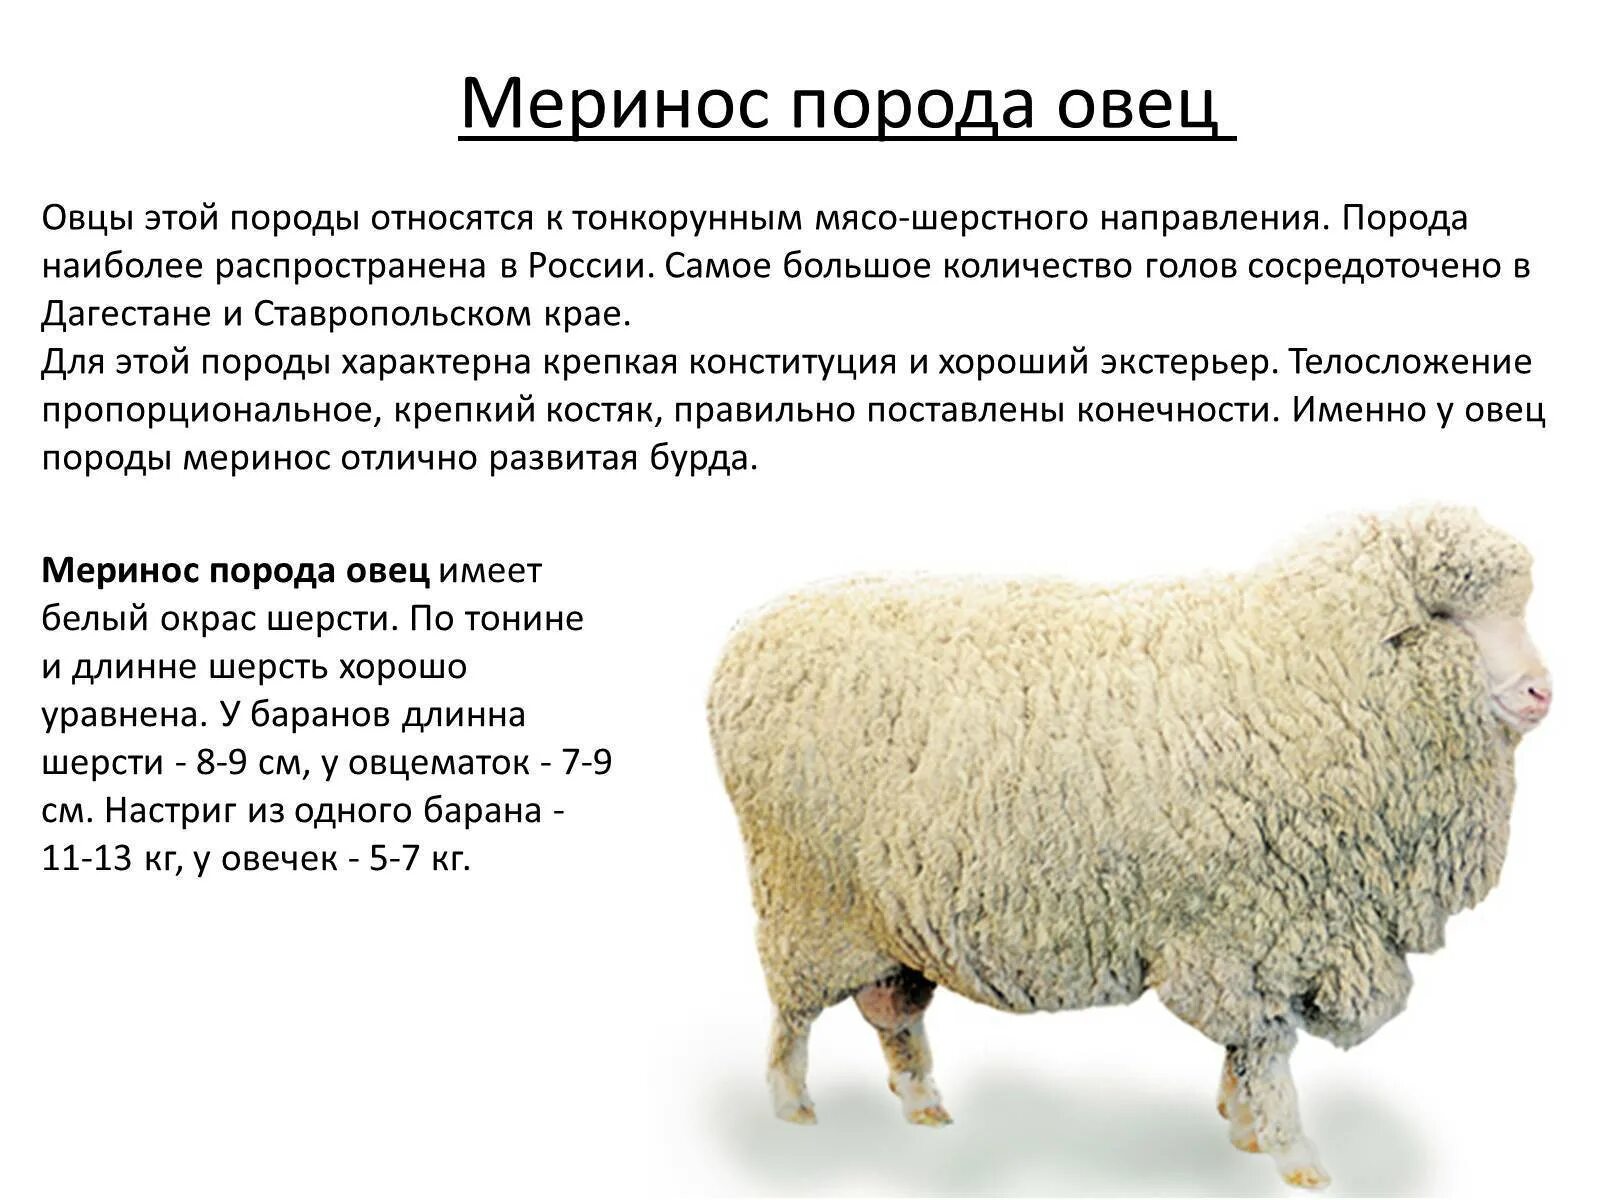 Австралийский меринос порода овец. Мериносы порода овец вес. Мериносы порода овец характеристика. Порода овец Джакоб. Сколько вес барана